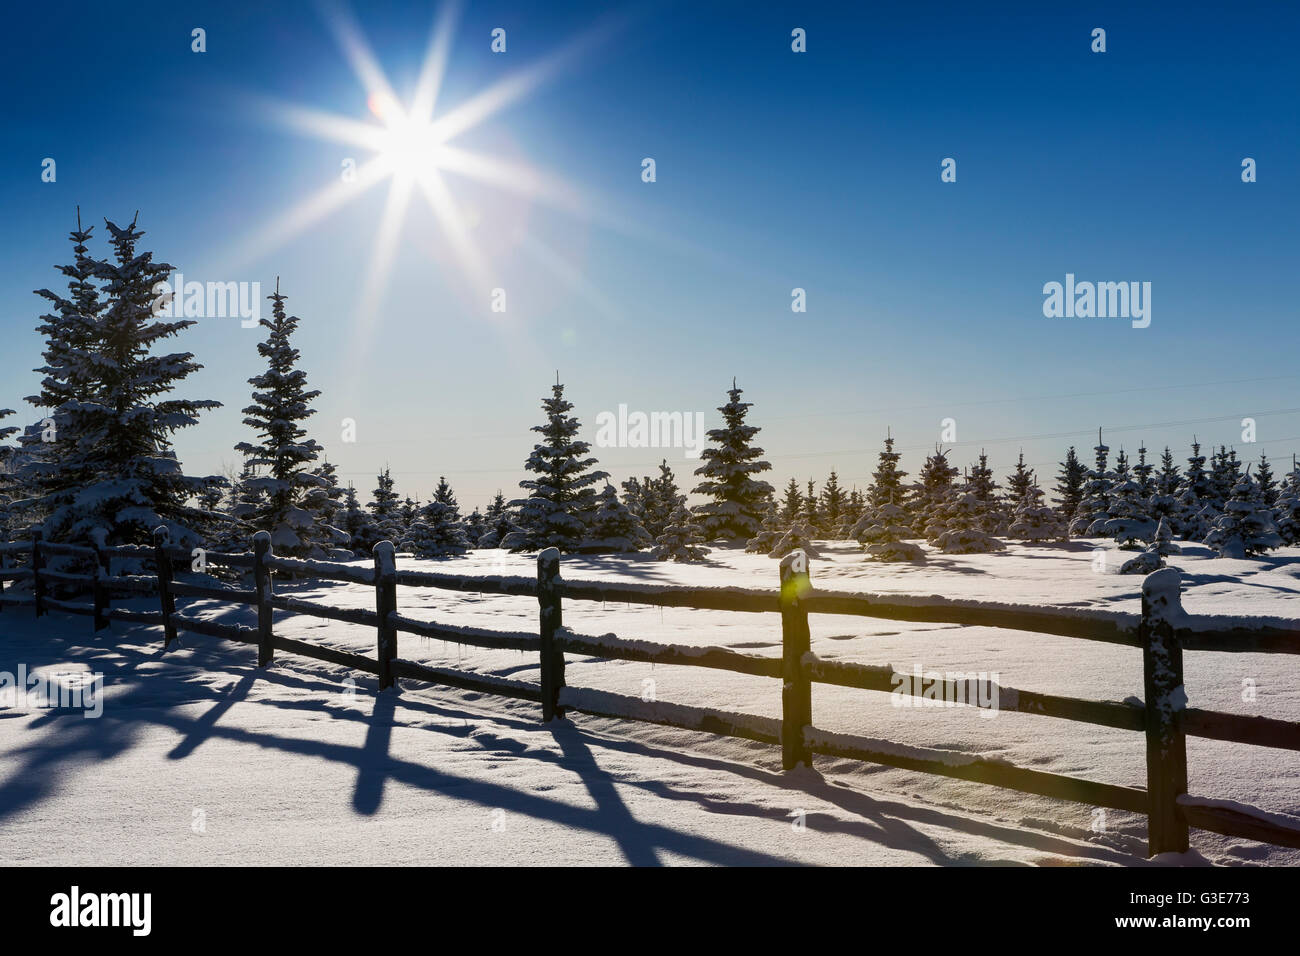 Ein Silhouette Holzscheit Zaun im Schnee bedeckt mit Schnee bedeckten immergrüne Bäume ein Platzen der Sonne und blauer Himmel; Calgary, Alberta, Kanada Stockfoto